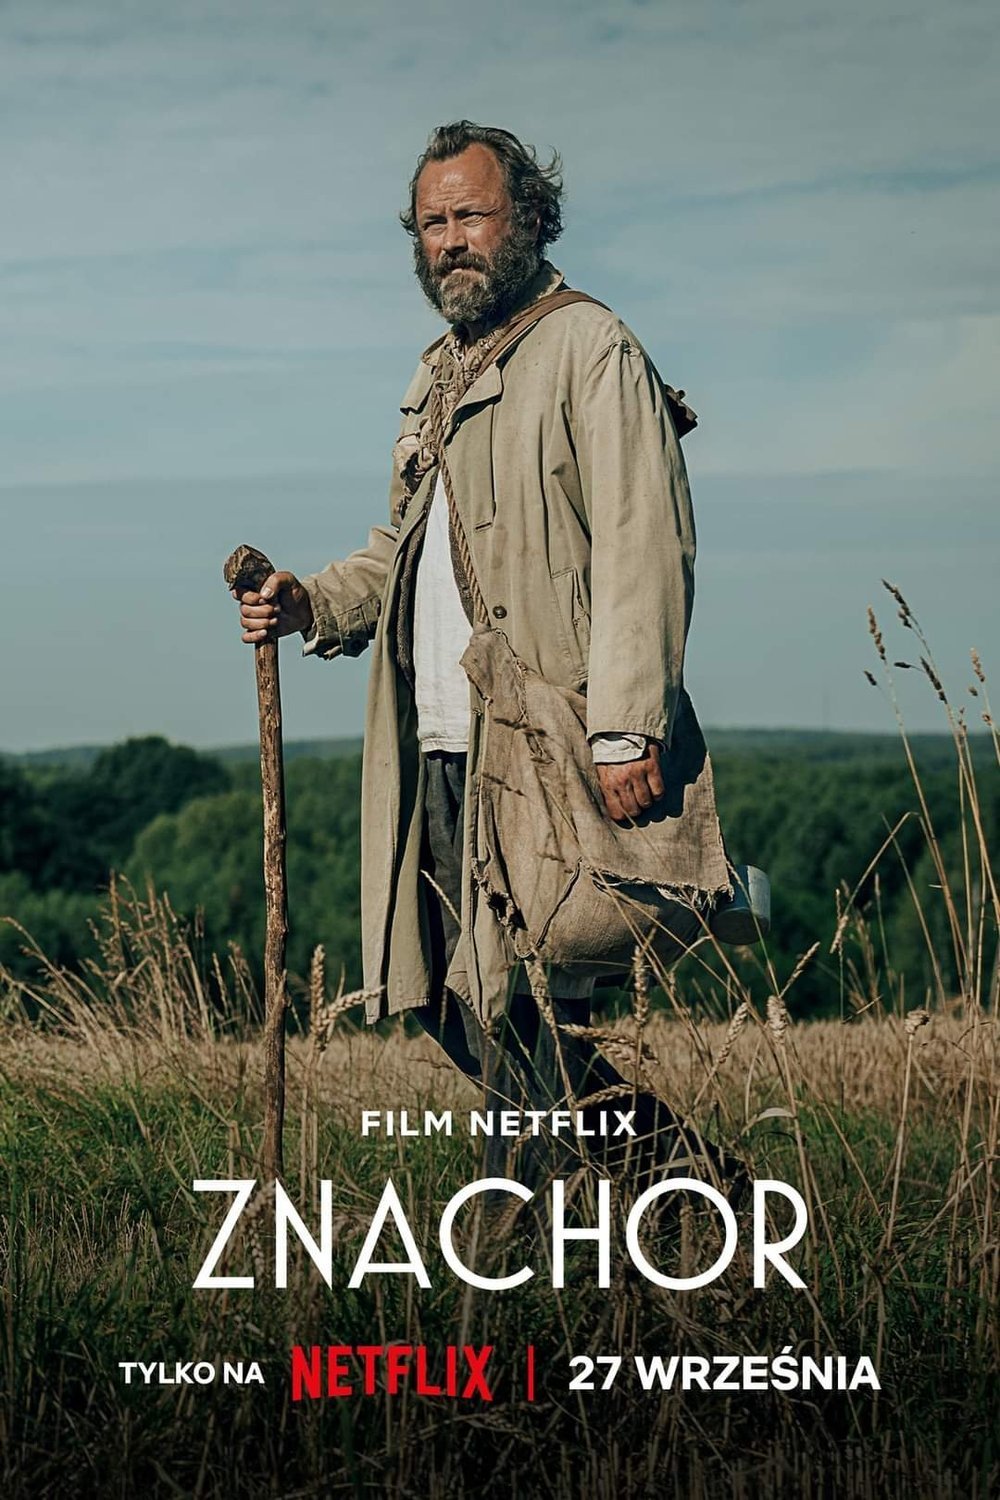 L'affiche originale du film Znachor en polonais